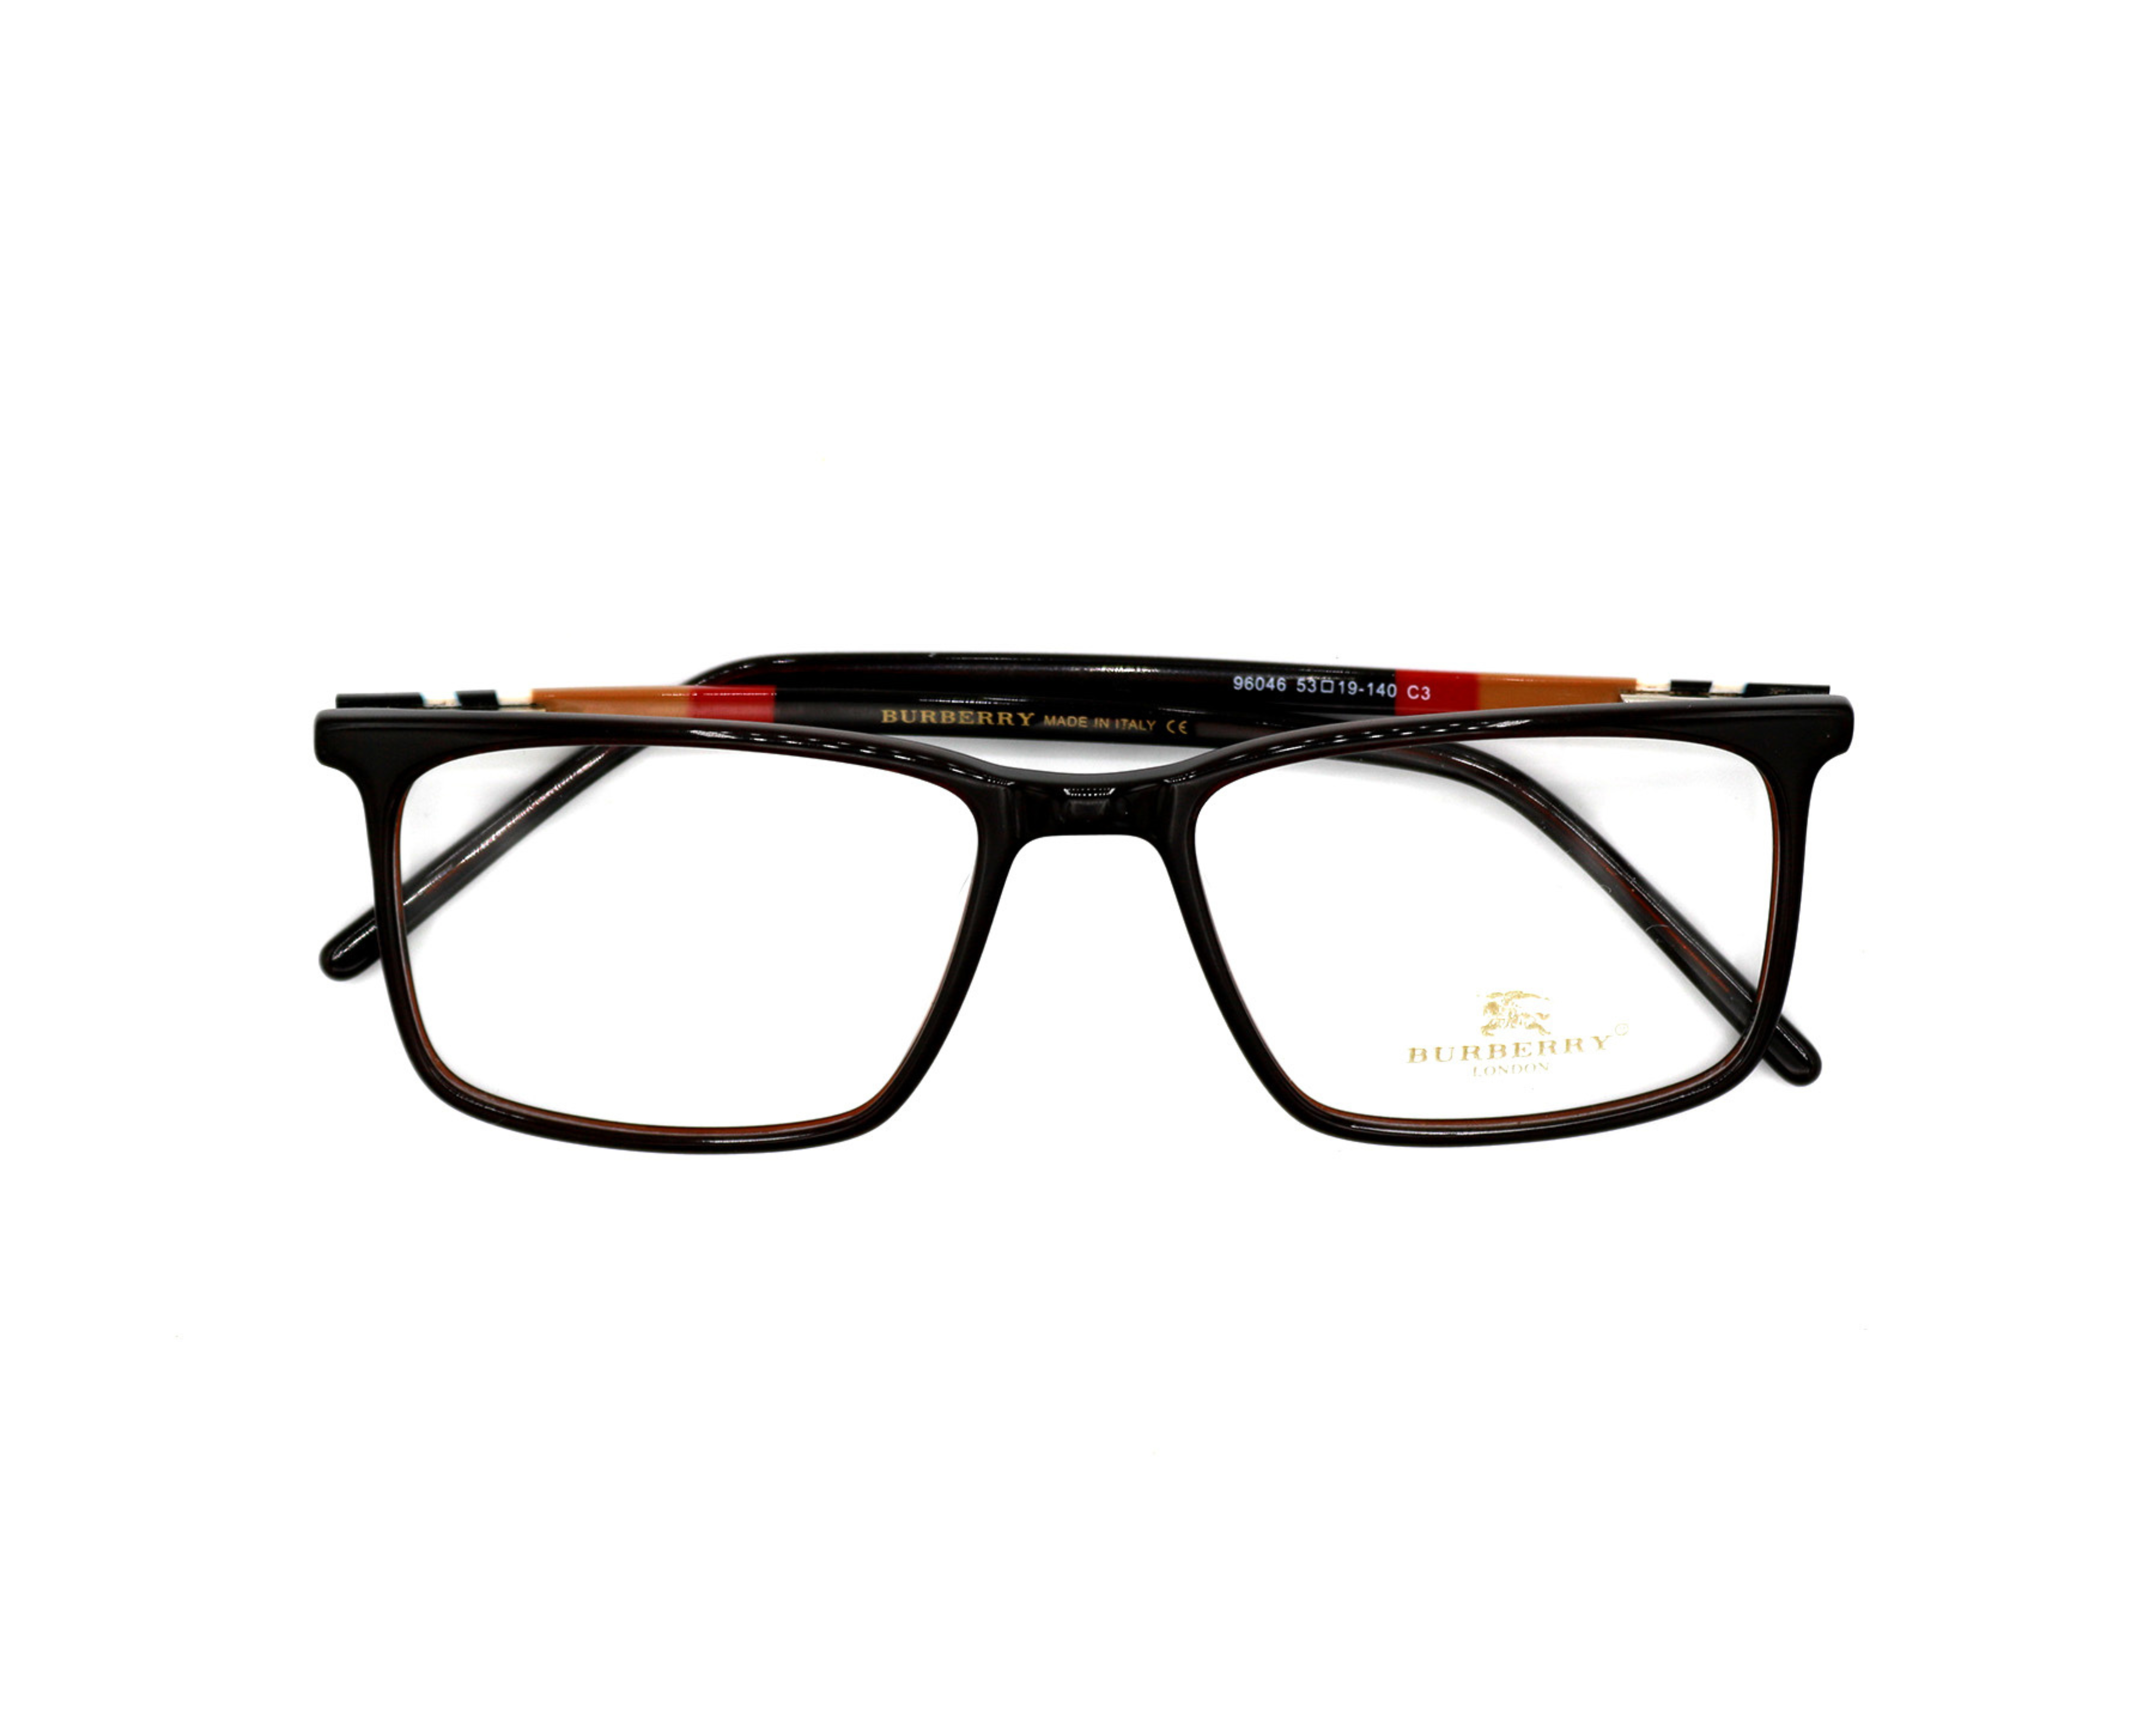 NS Luxury - 96046 - Brown - Eyeglasses